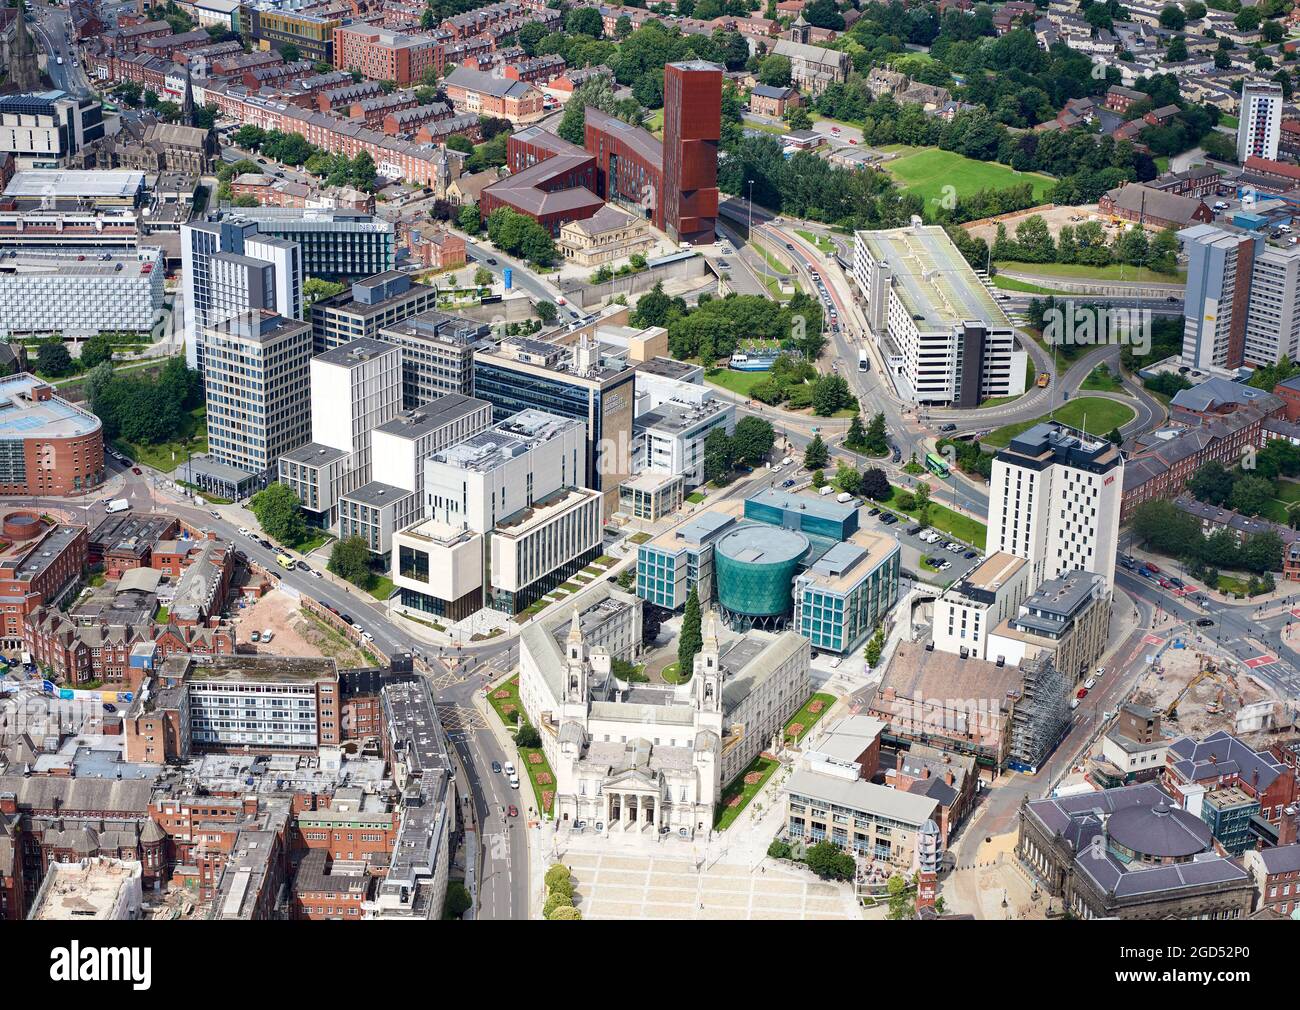 Vue aérienne de l'université métropolitaine de Leeds, du centre-ville, du West Yorkshire, du nord de l'Angleterre, au Royaume-Uni Banque D'Images